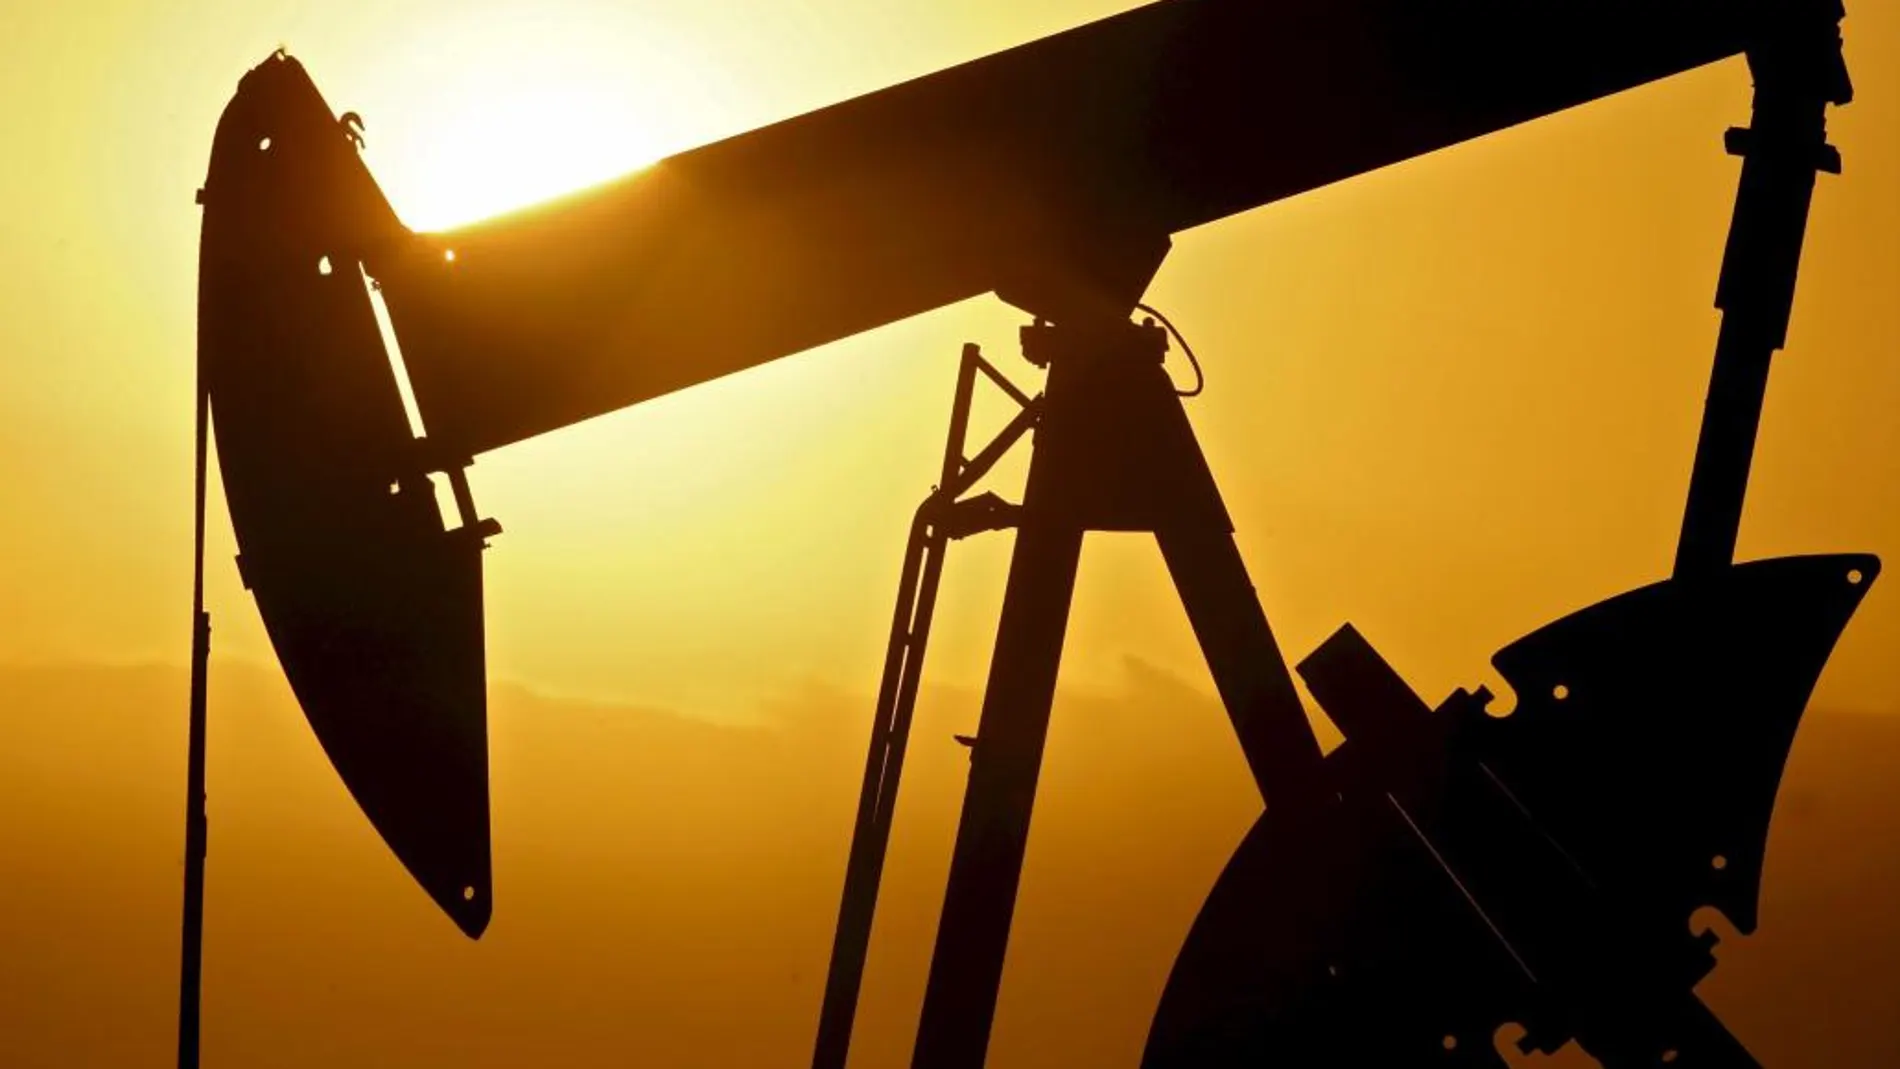 La menor subida del refino de petróleo impulsa la bajada de los precios